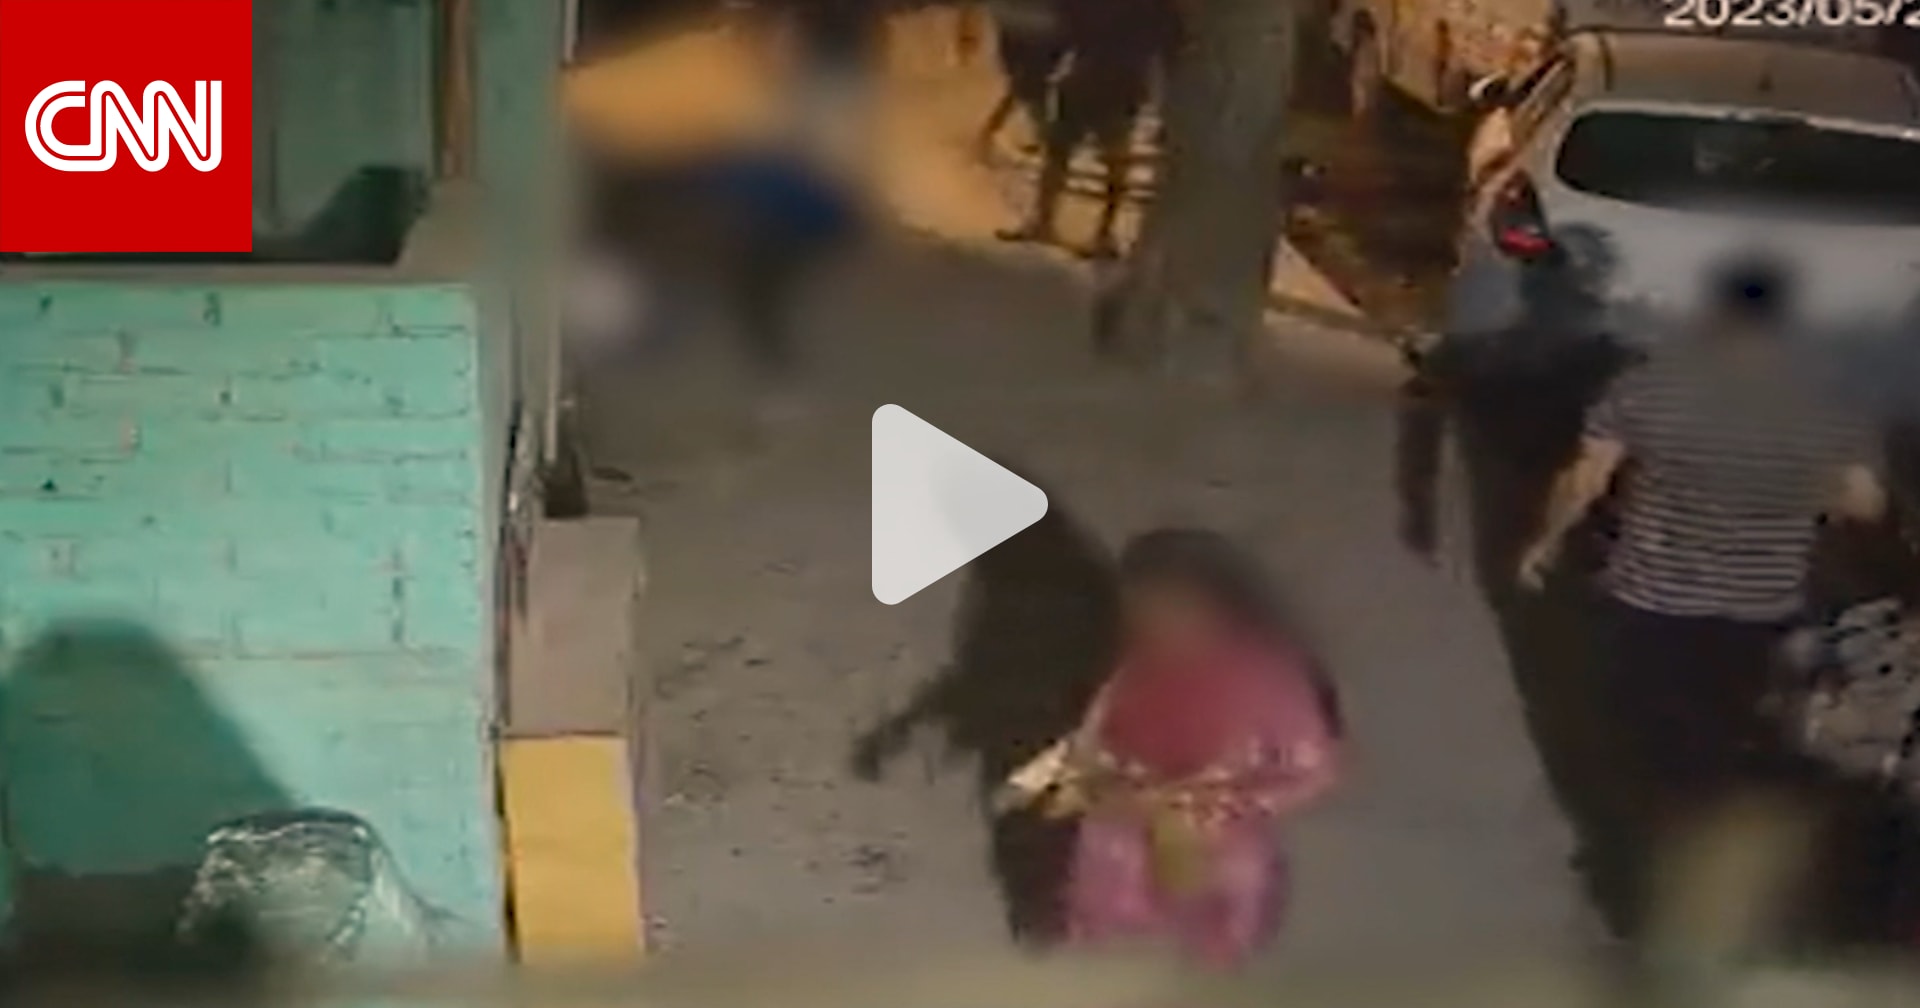 مصير مروع كان بانتظارها.. كاميرا مراقبة ترصد ما حدث لفتاة ليلا في أحد شوارع الهند